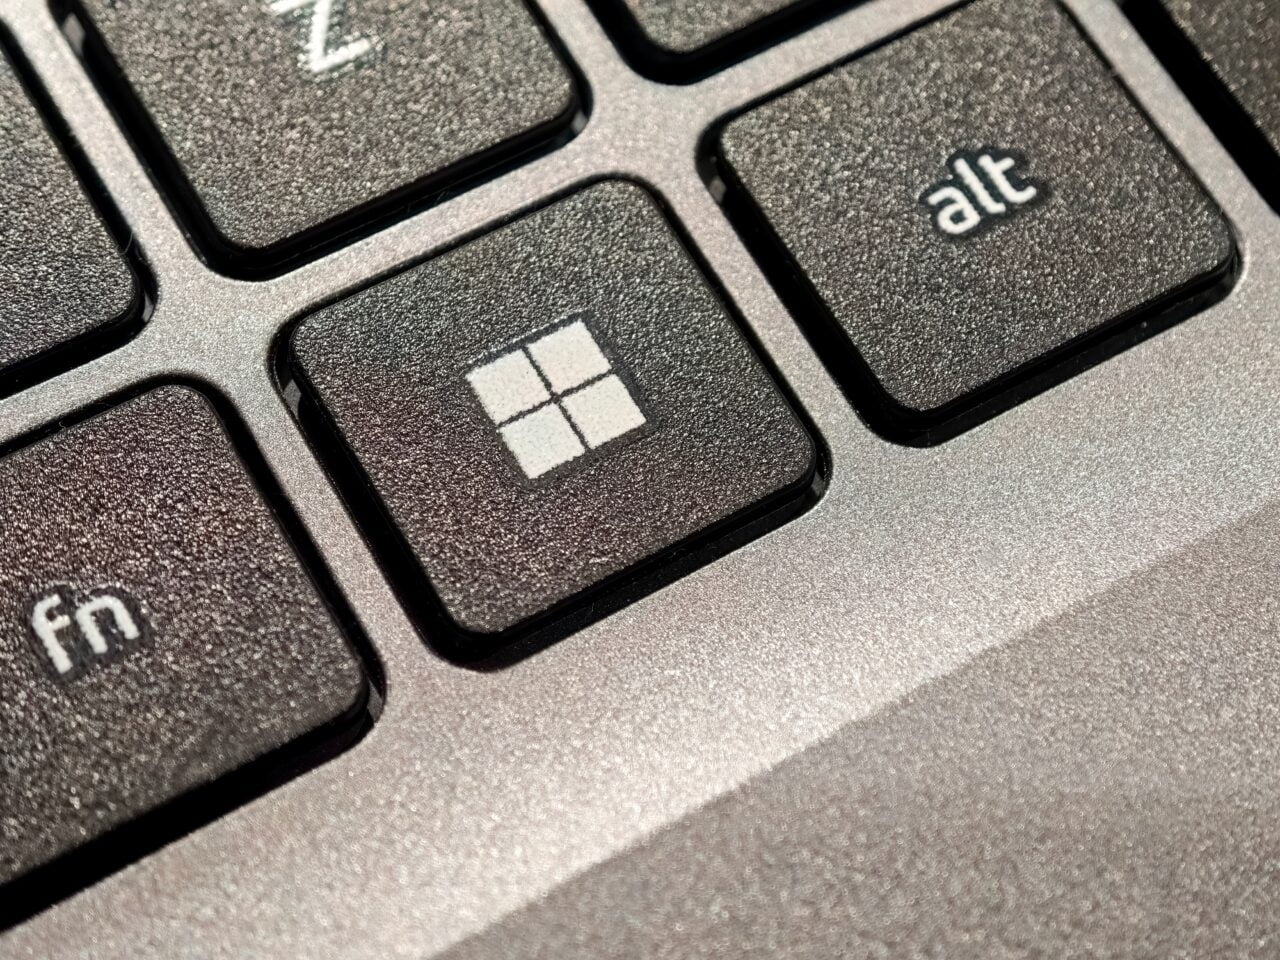 Zbliżenie na klawisze klawiatury z widocznymi klawiszami: fn, klawisz Windows, alt.